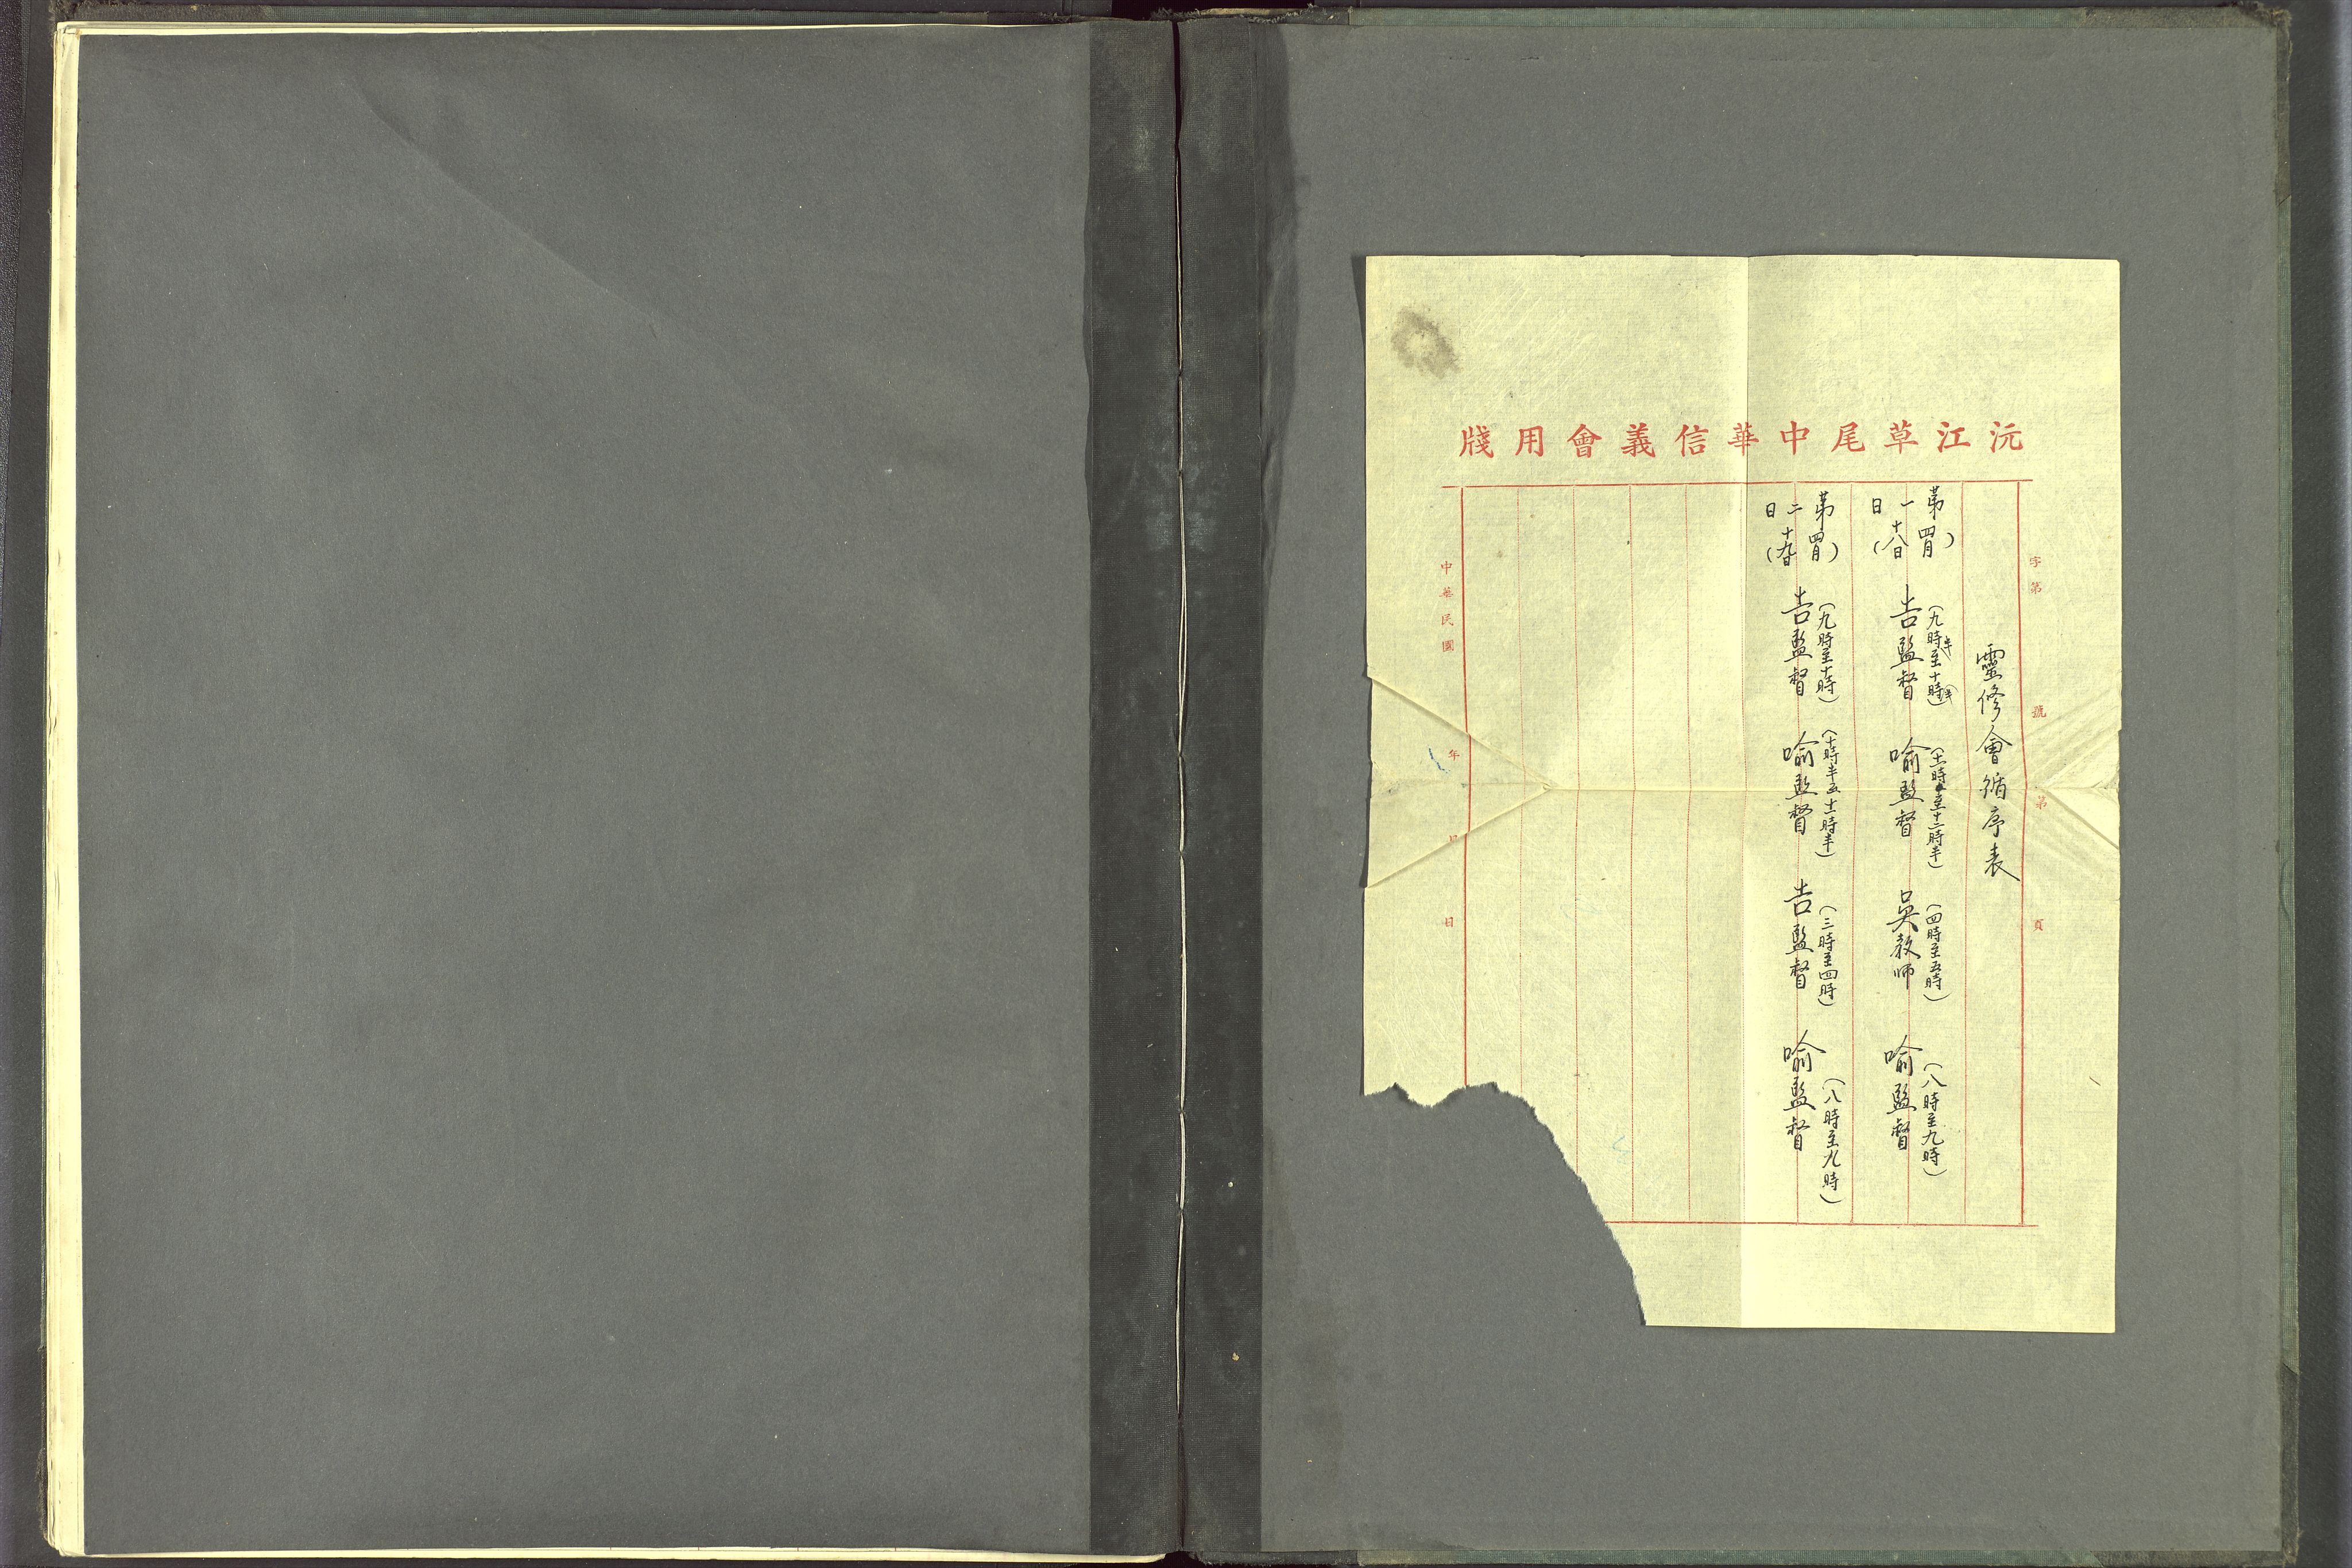 Det Norske Misjonsselskap - utland - Kina (Hunan), VID/MA-A-1065/Dm/L0097: Parish register (official) no. 135, 1917-1948